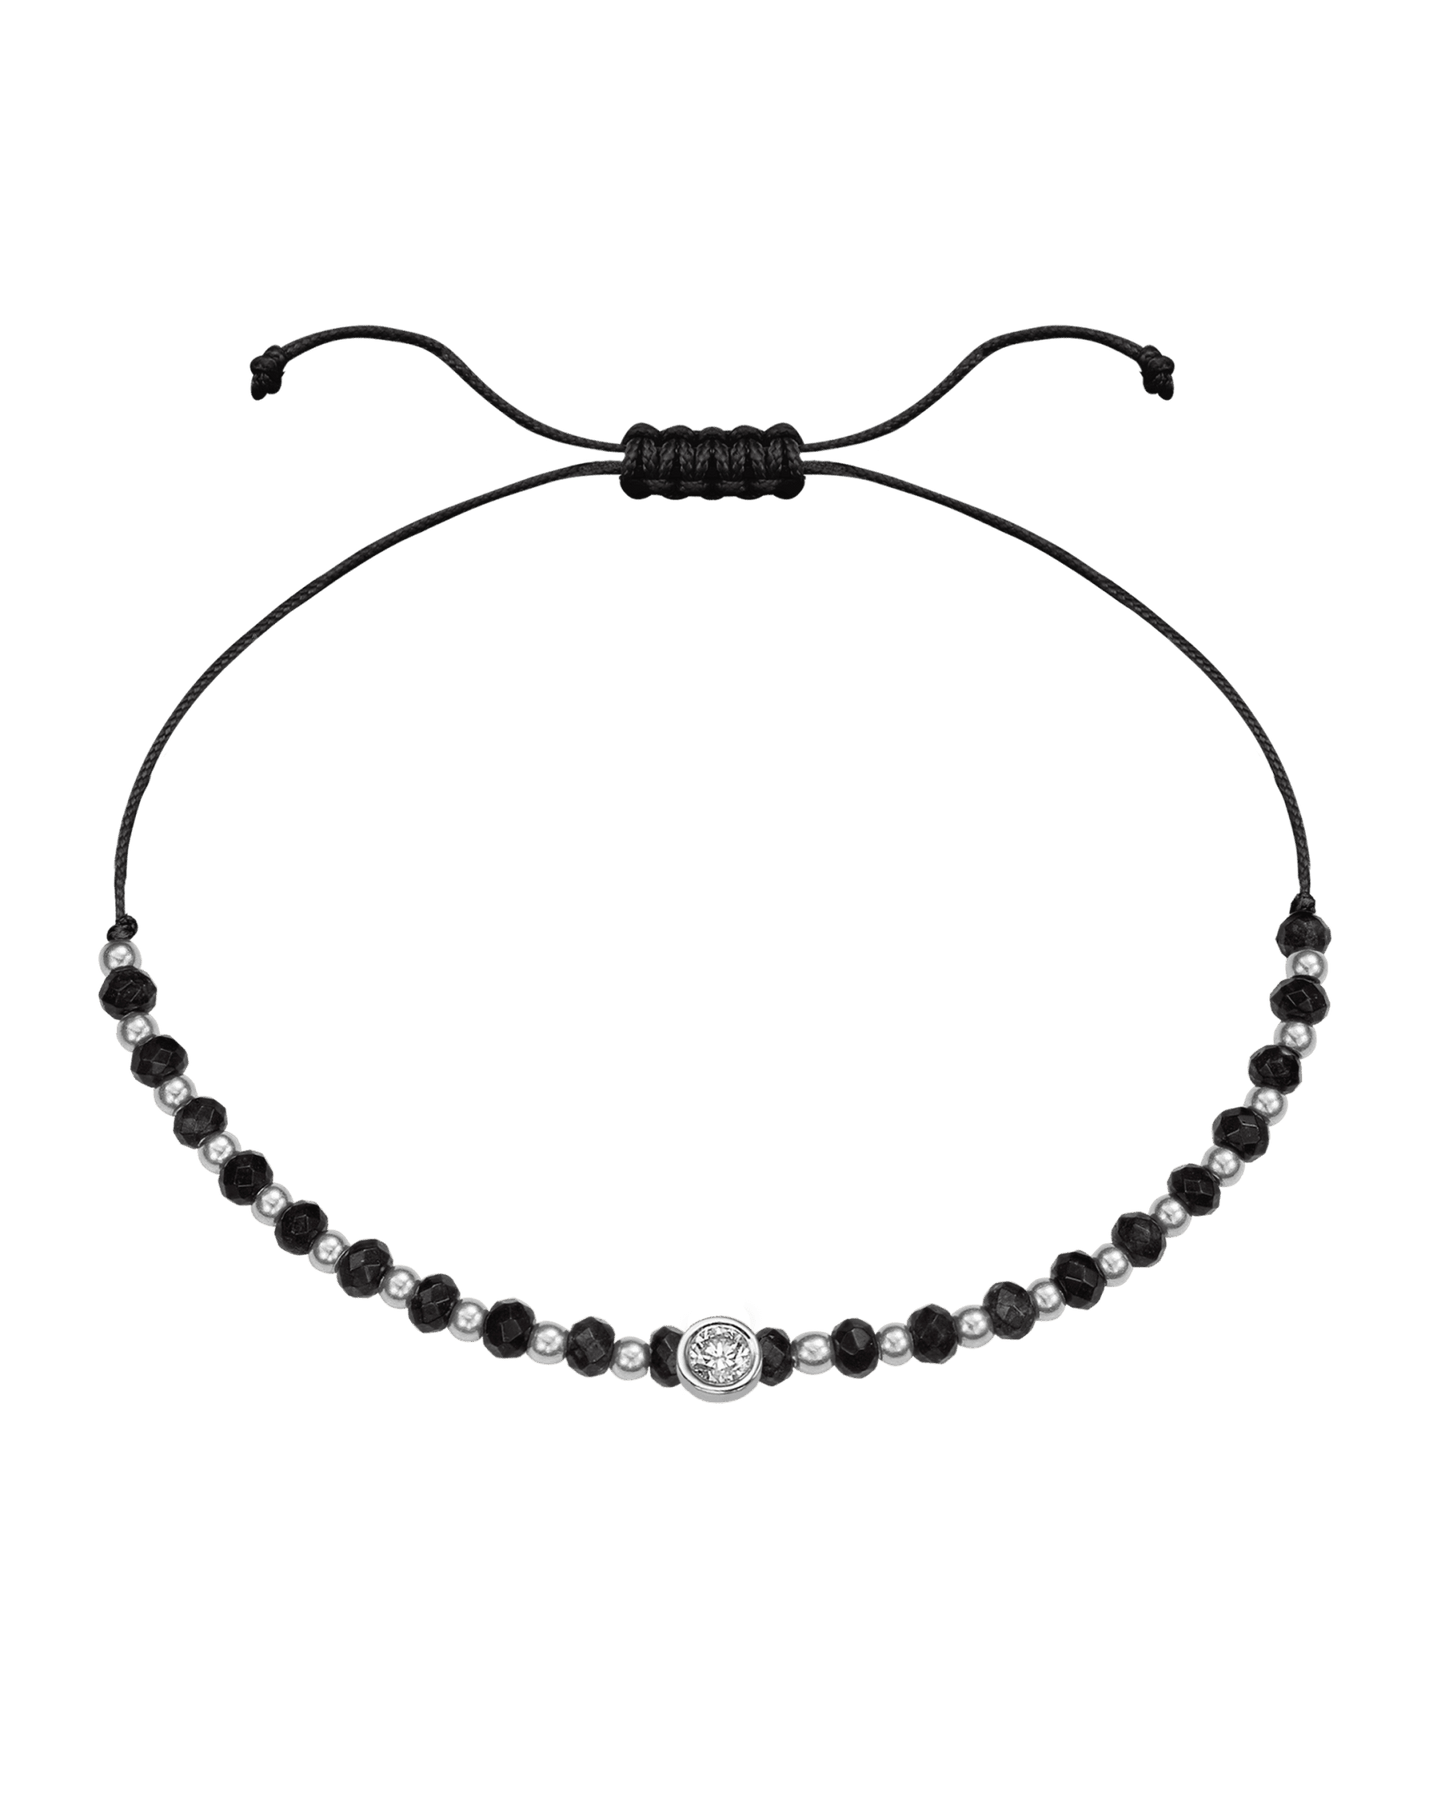 Black Onyx Gemstone String of Love Bracelet for Protection - 14K White Gold Bracelets 14K Solid Gold Black Large: 0.1ct 